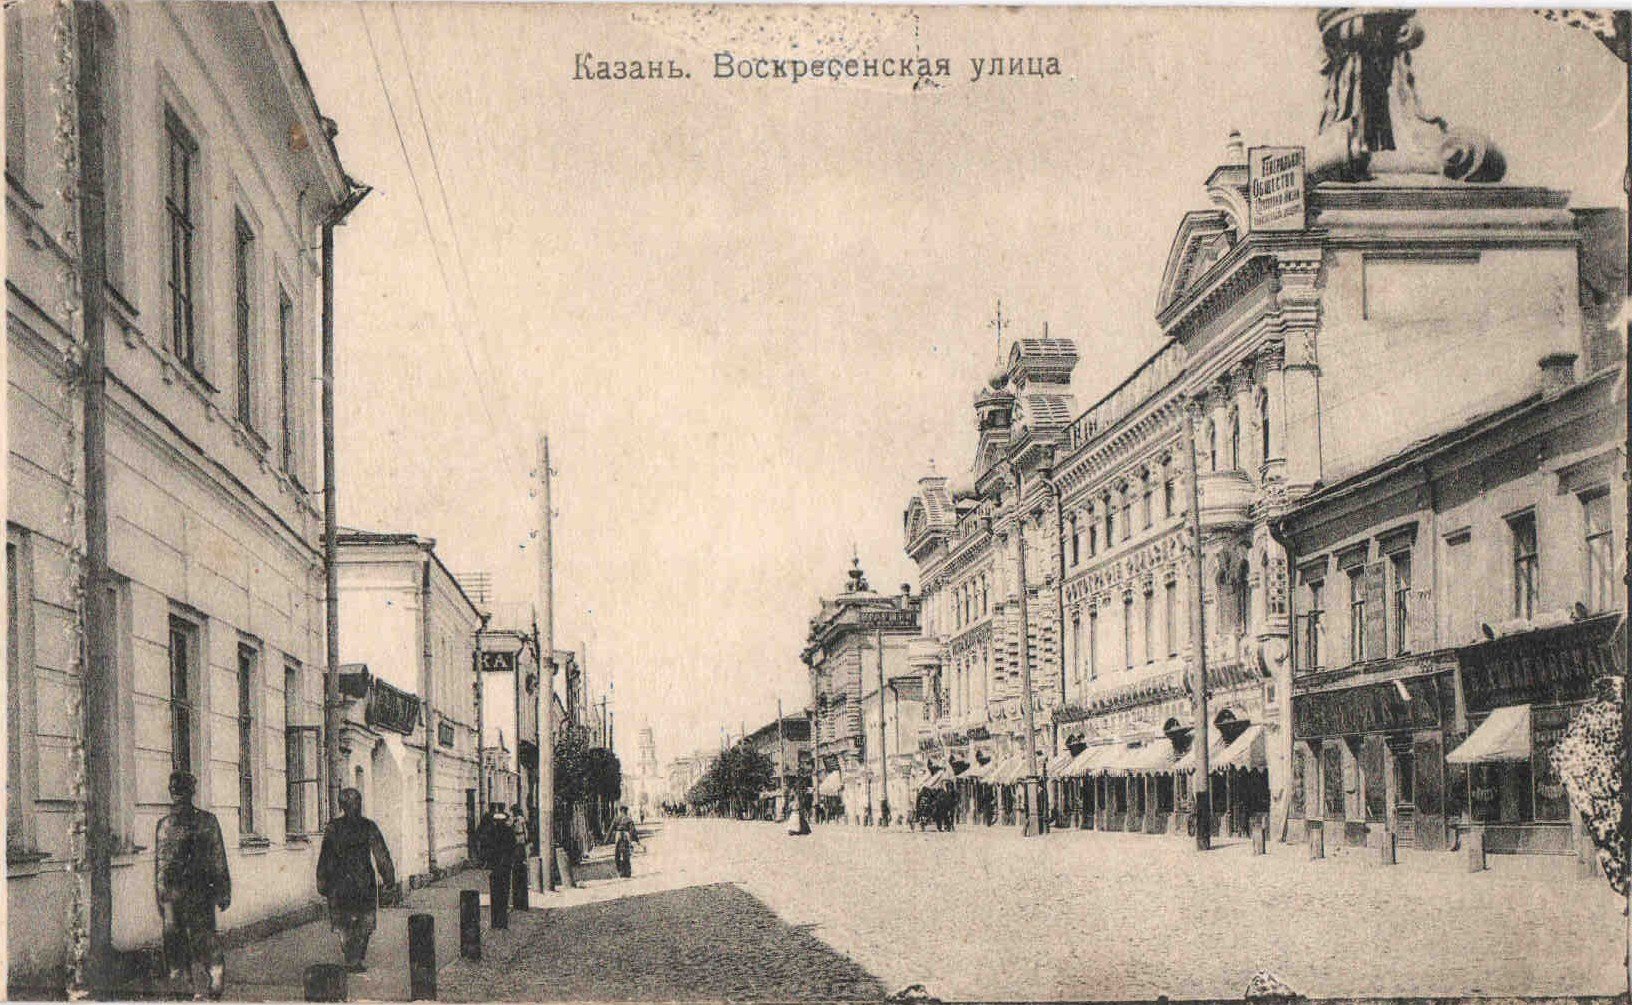 Пешеходная экскурсия по Казани: Ожившие портреты улицы Воскресенской